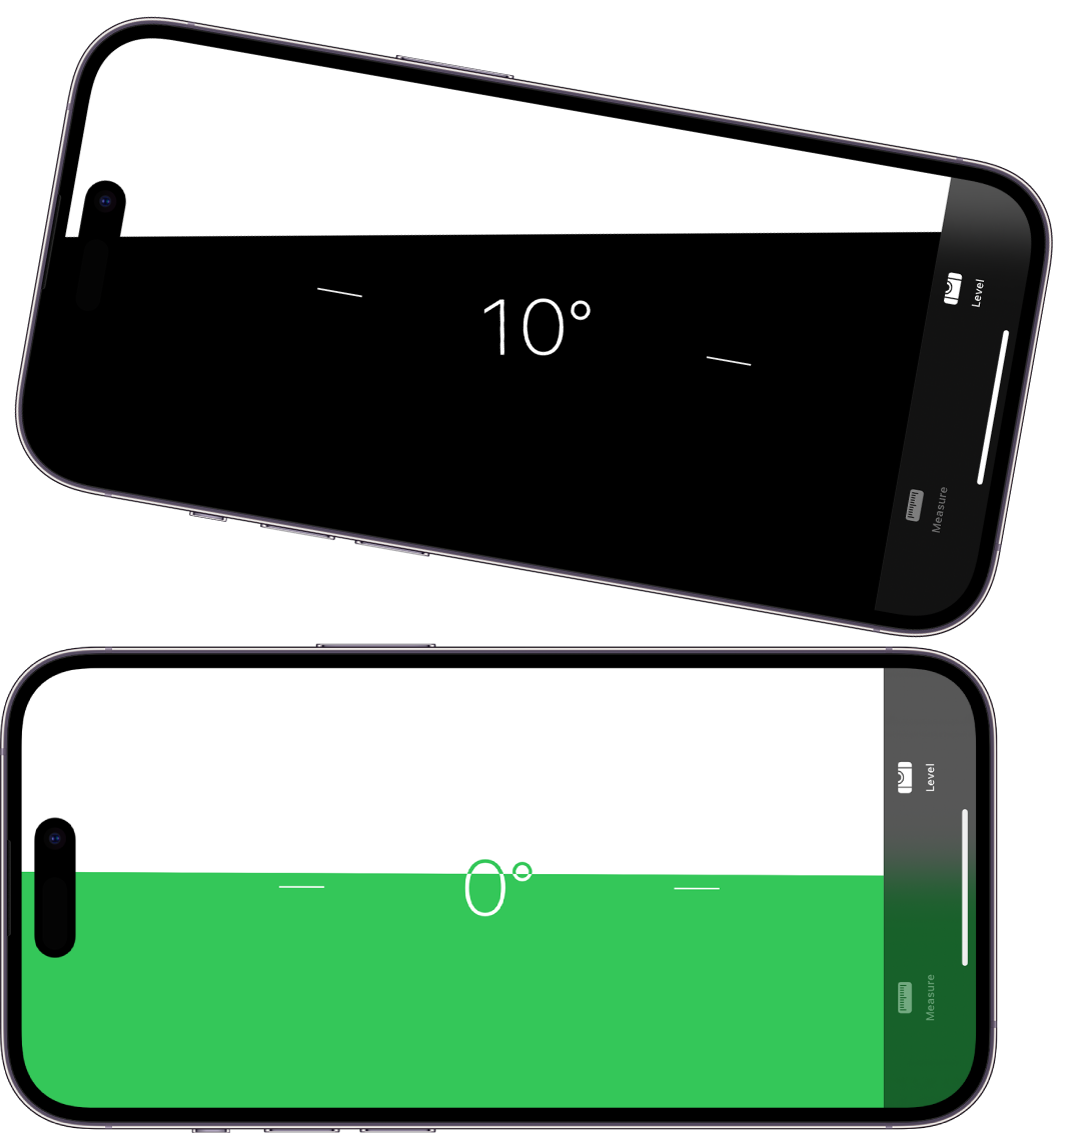 Līmeņa ekrāns lietotnē Measure. Augšējā attēlā iPhone tālrunis ir sasvērts 10 grādu leņķī; apakšējā attēlā iPhone tālrunis ir līmeņots.